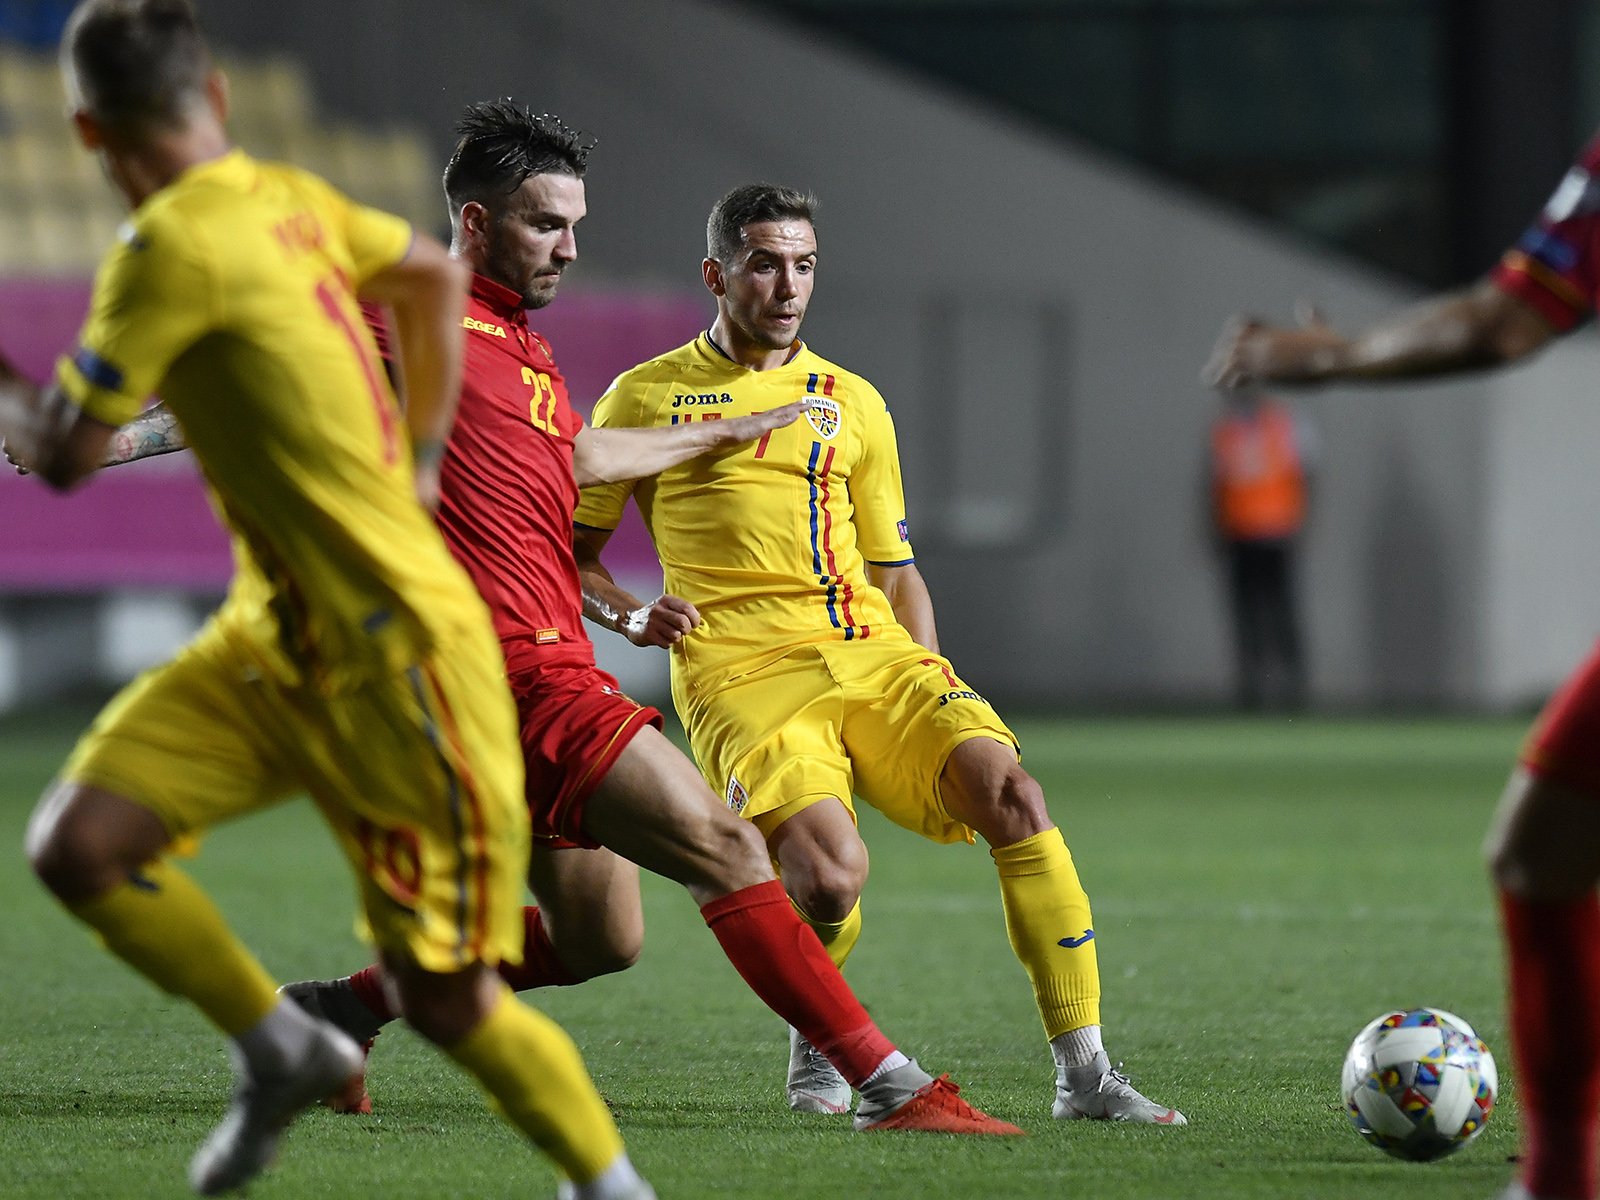  Naţionala România începe parcursul în Liga Naţiunilor. Primul meci va fi cu Muntenegru